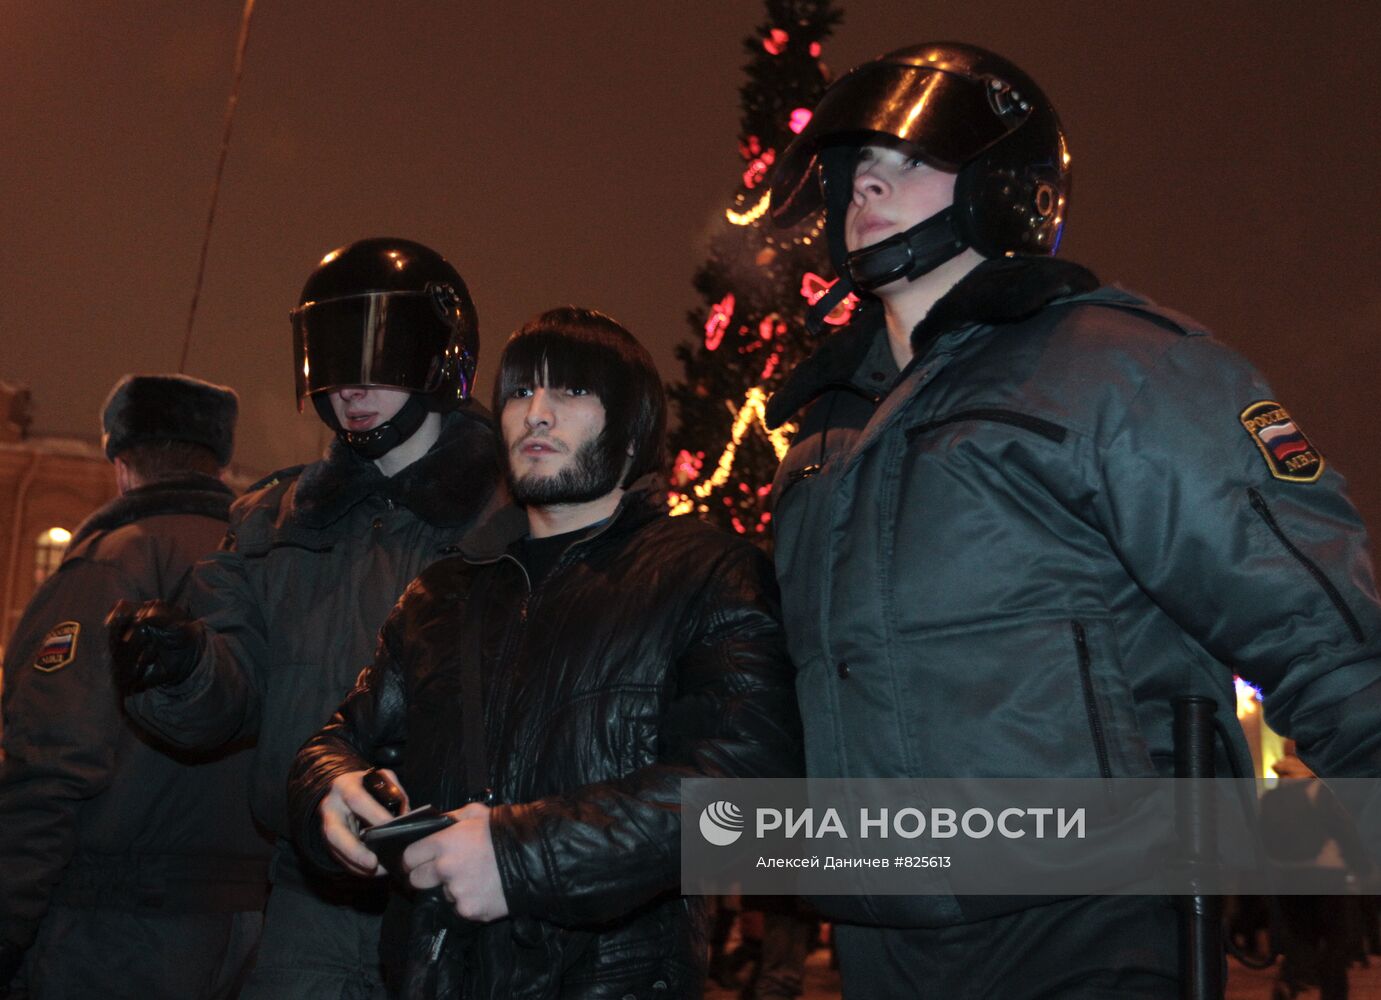 Ситуация на Сенной площади в Санкт-Петербурге